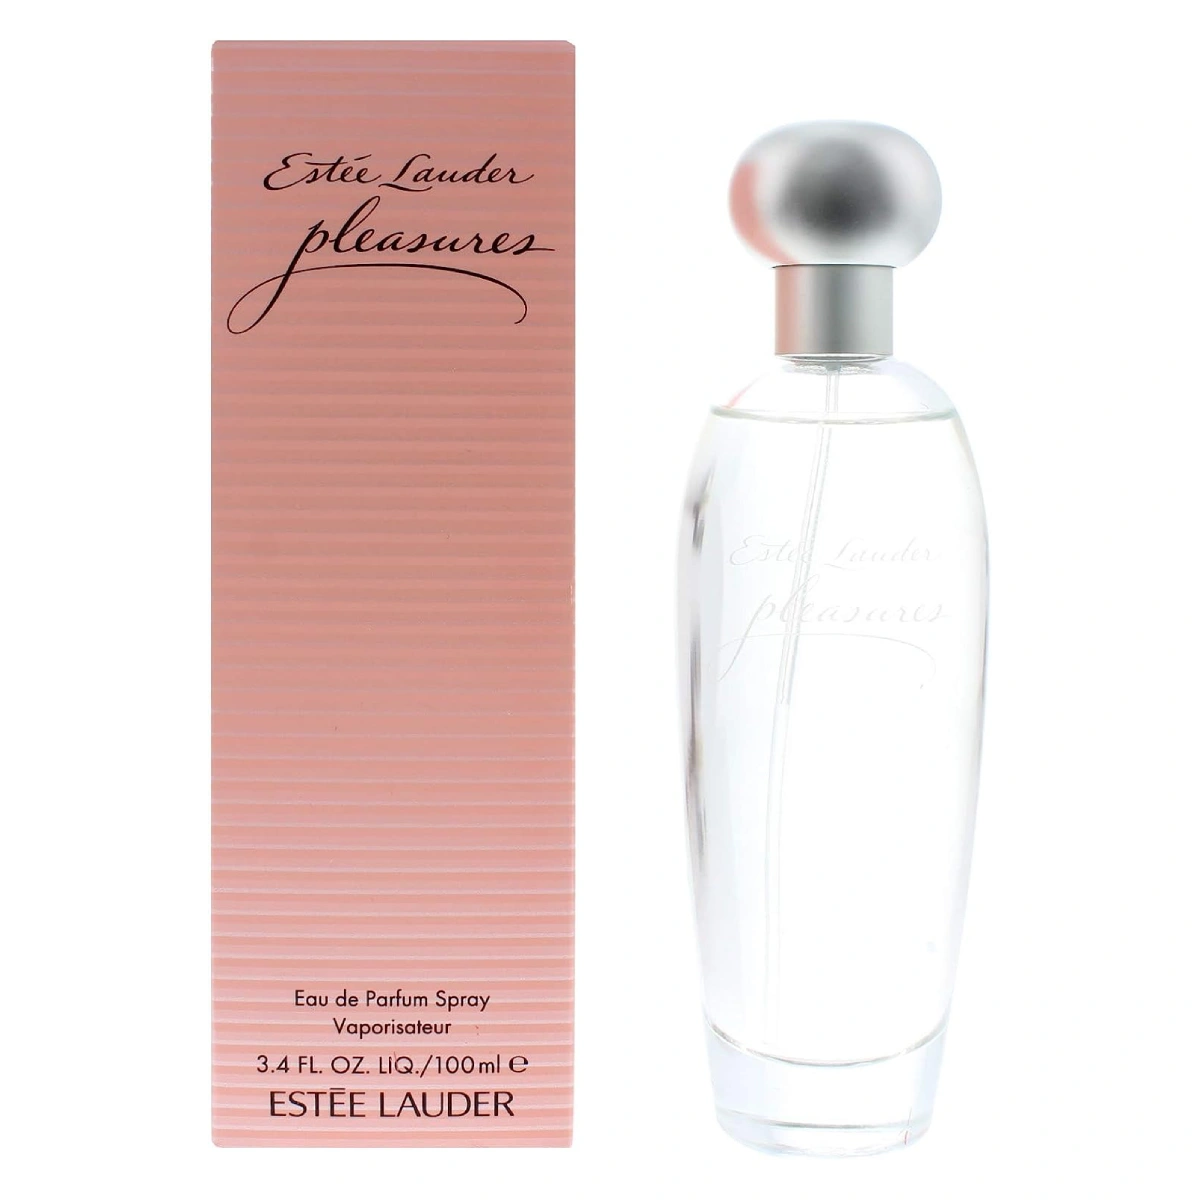 A bottle of Estée Lauder Pleasures perfume against a white background